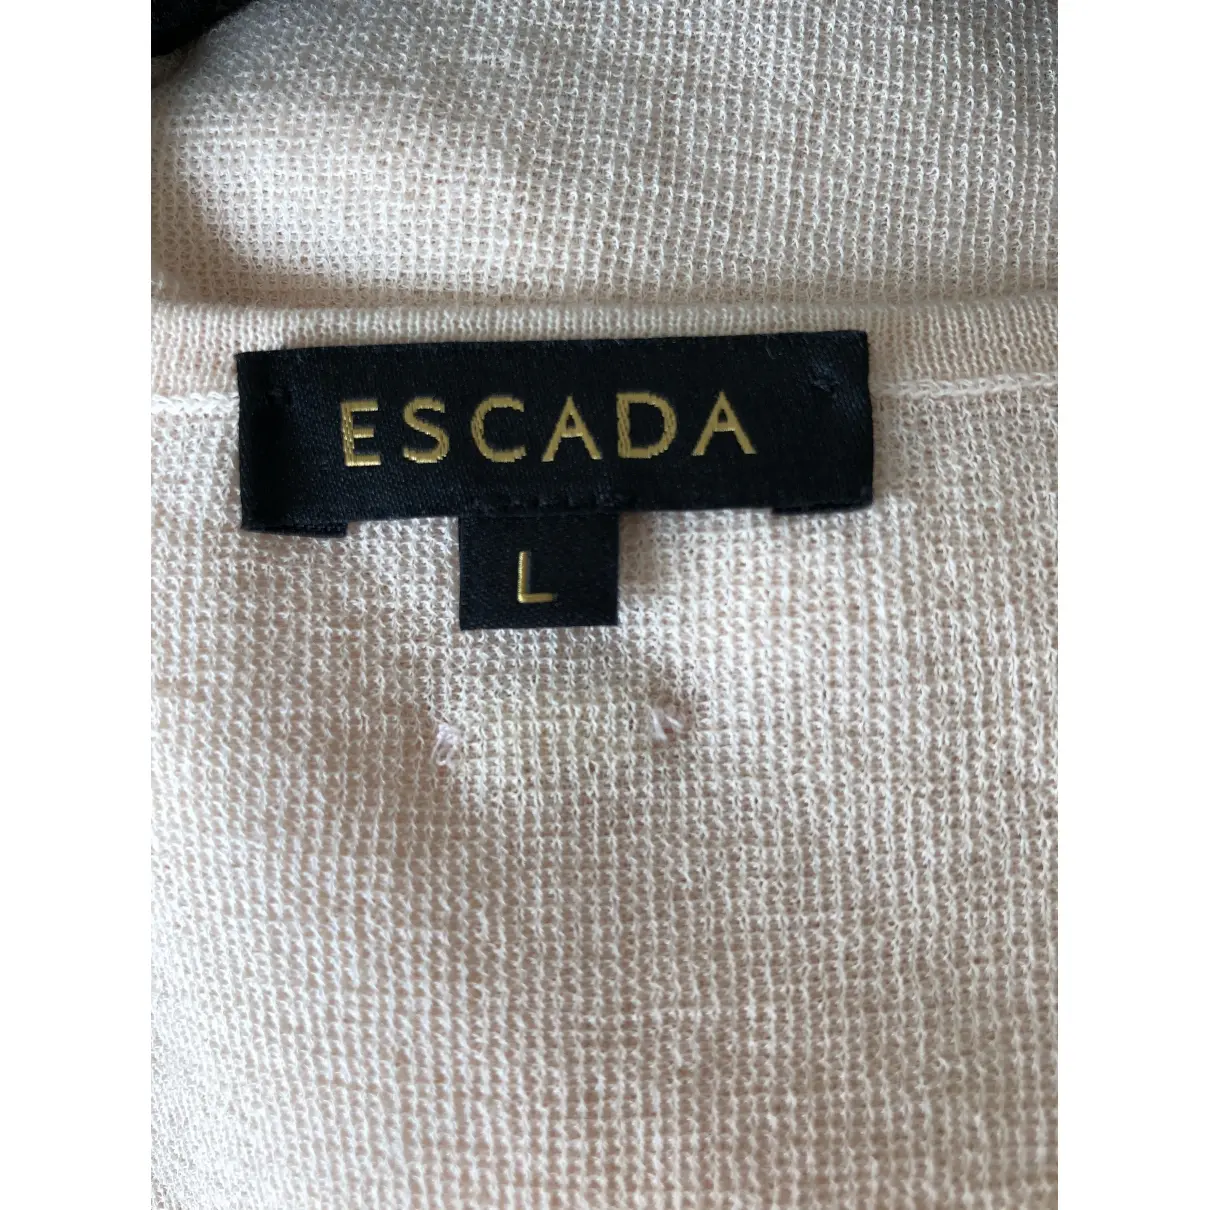 Buy Escada Vest online